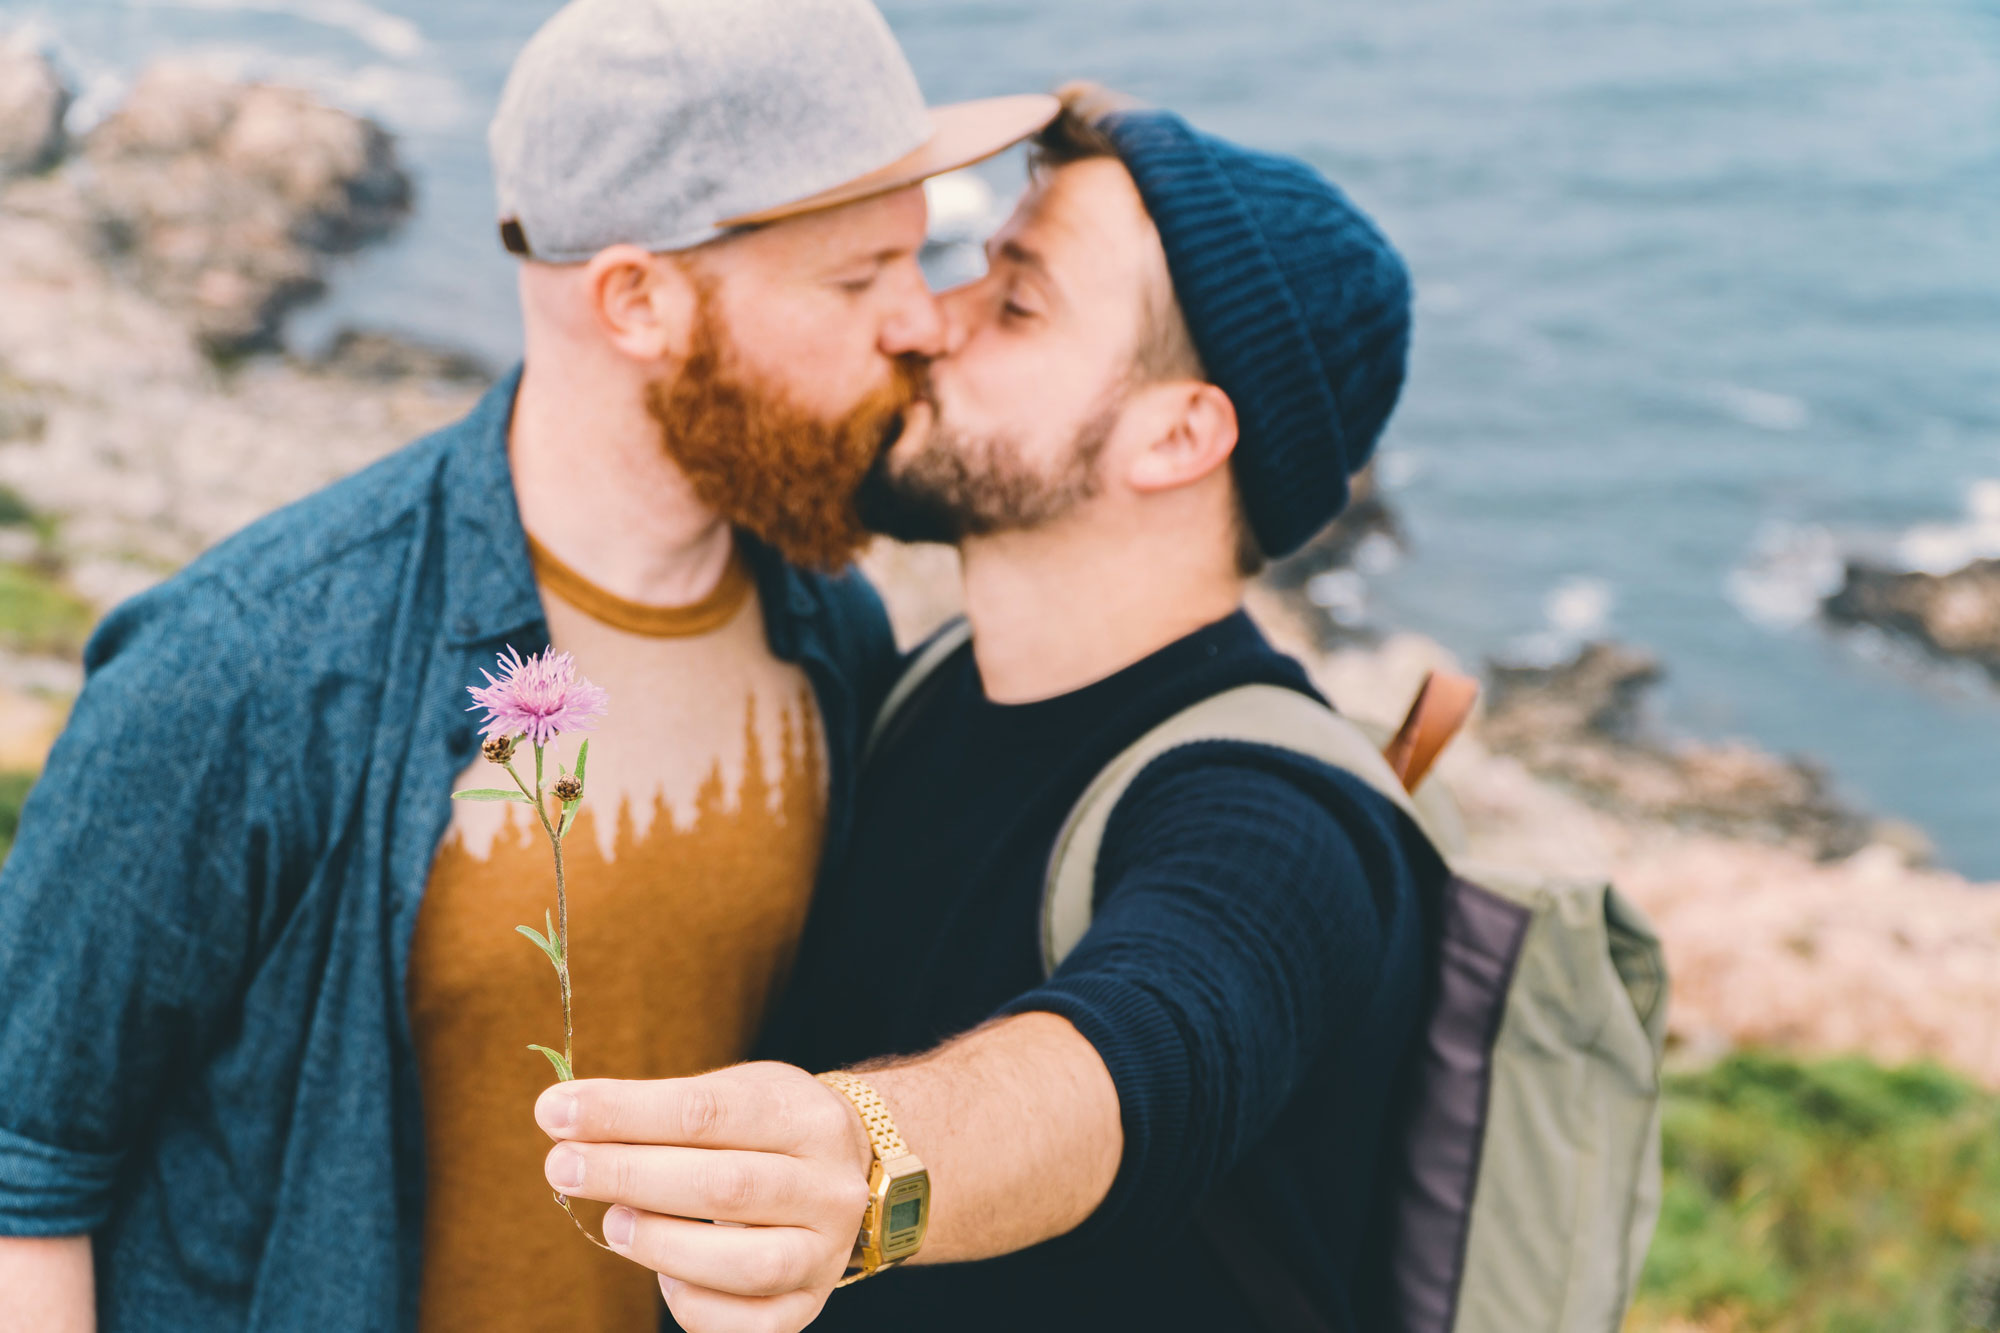 gay men in gay porn videos at summer resorts